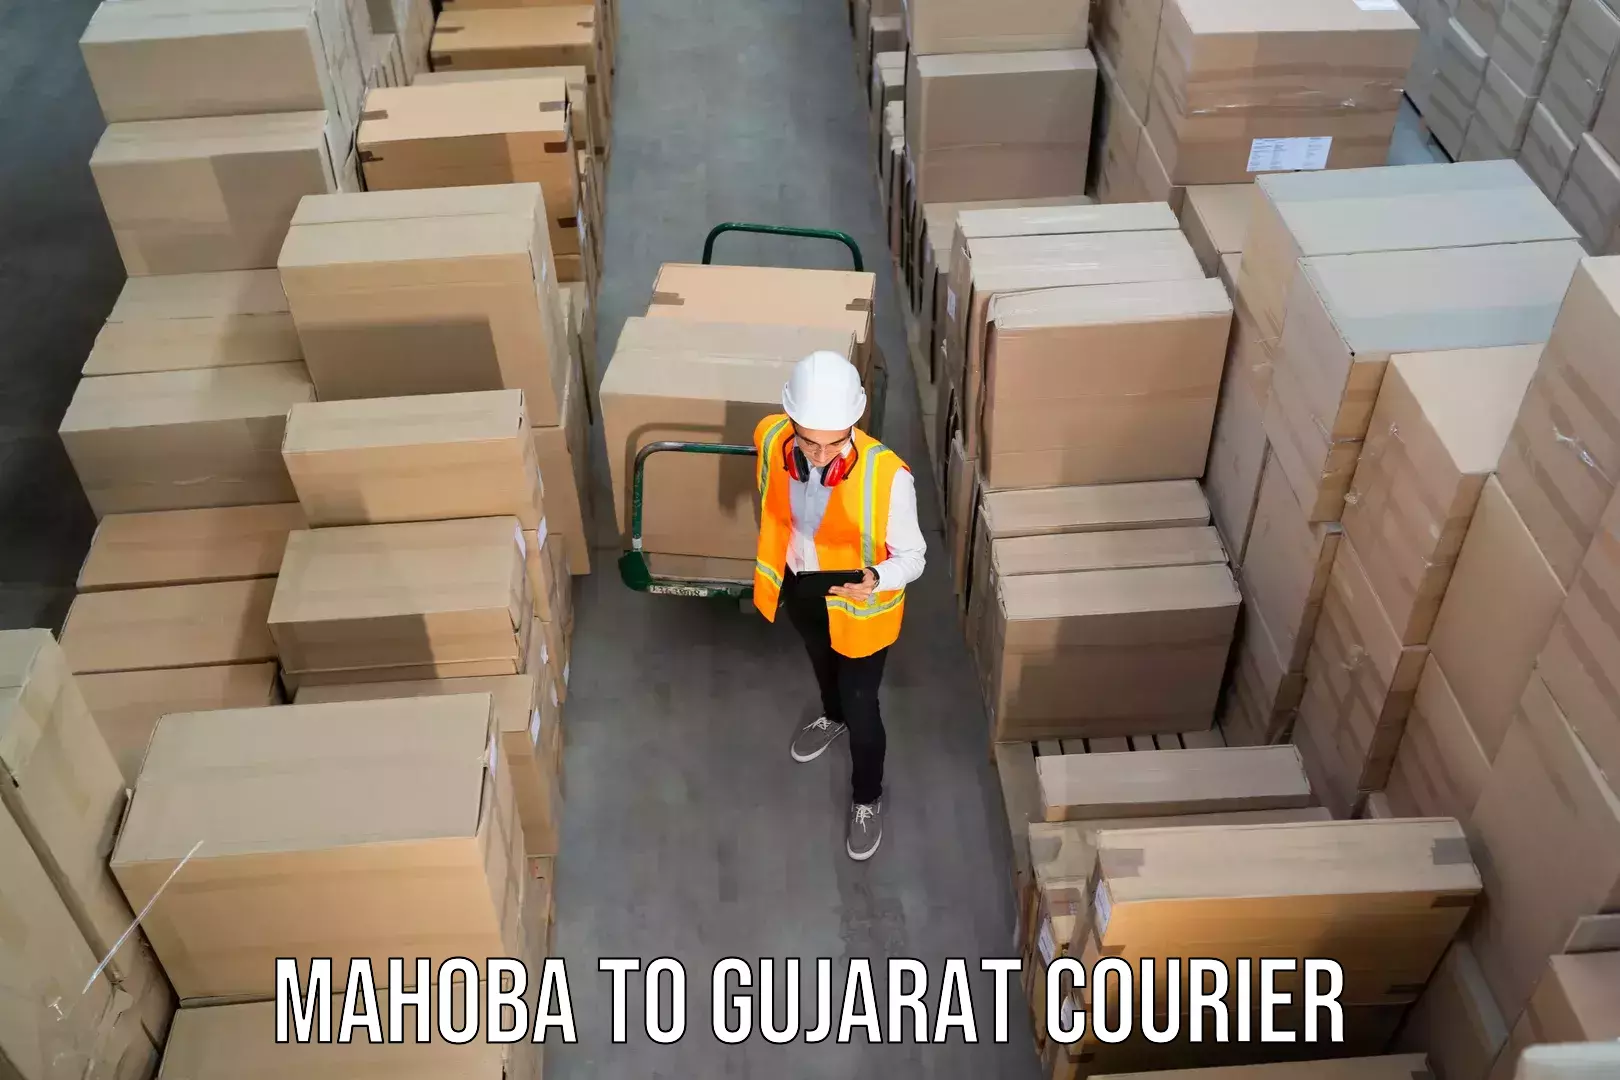 24-hour courier services Mahoba to Gandhinagar